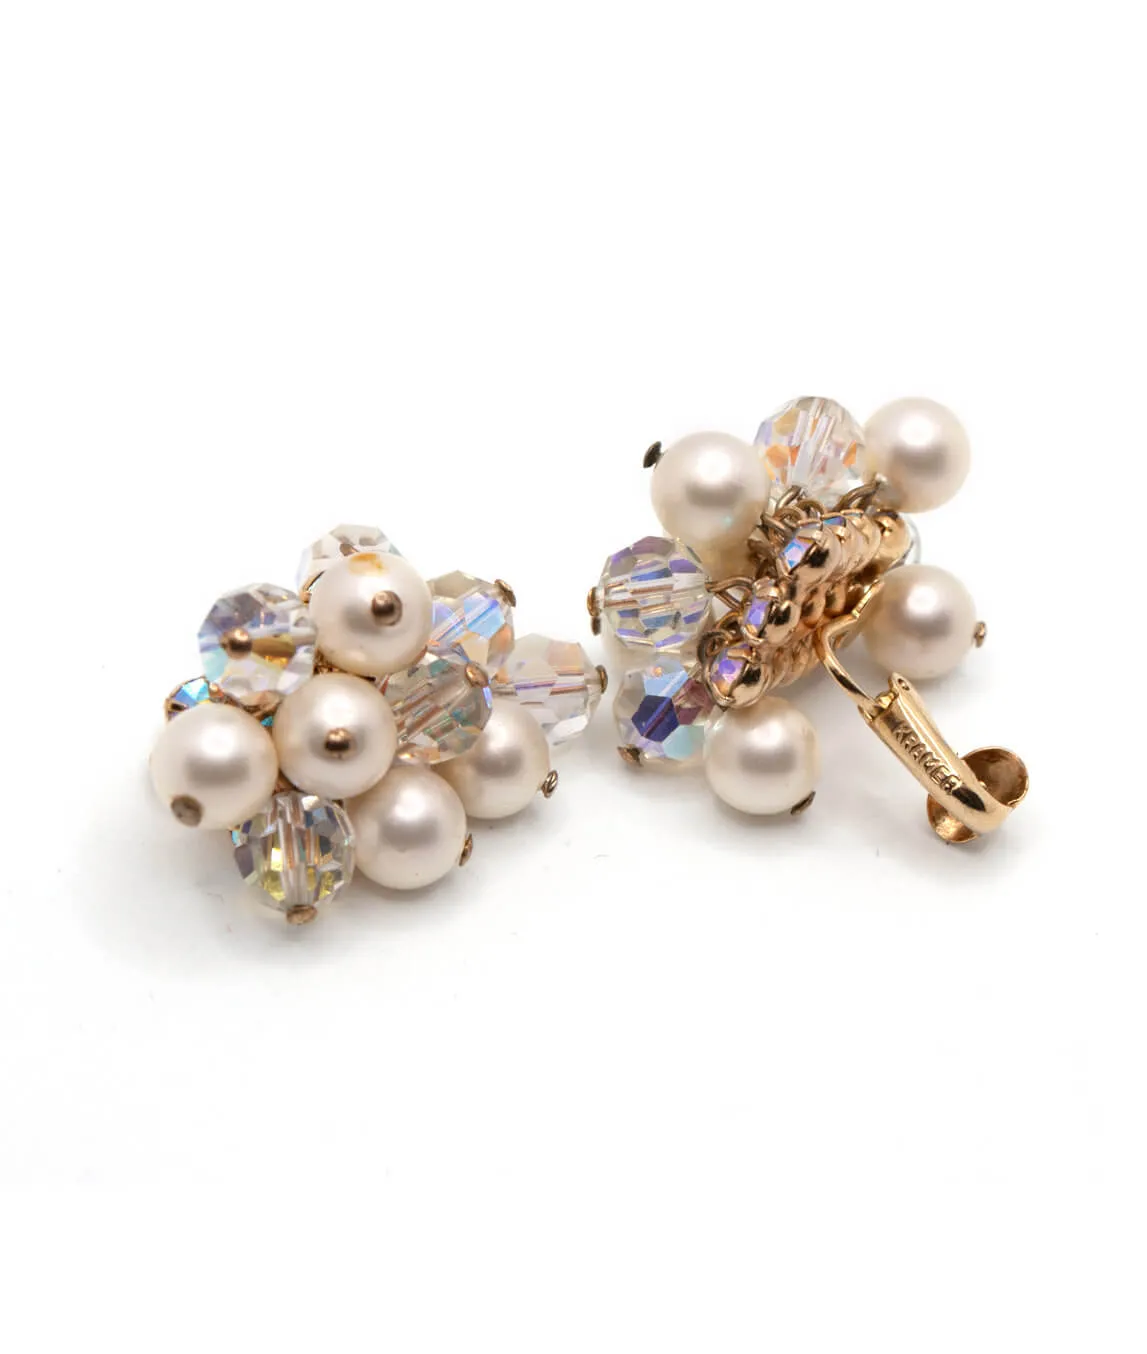 Vintage beaded earrings by Kramer in pearl